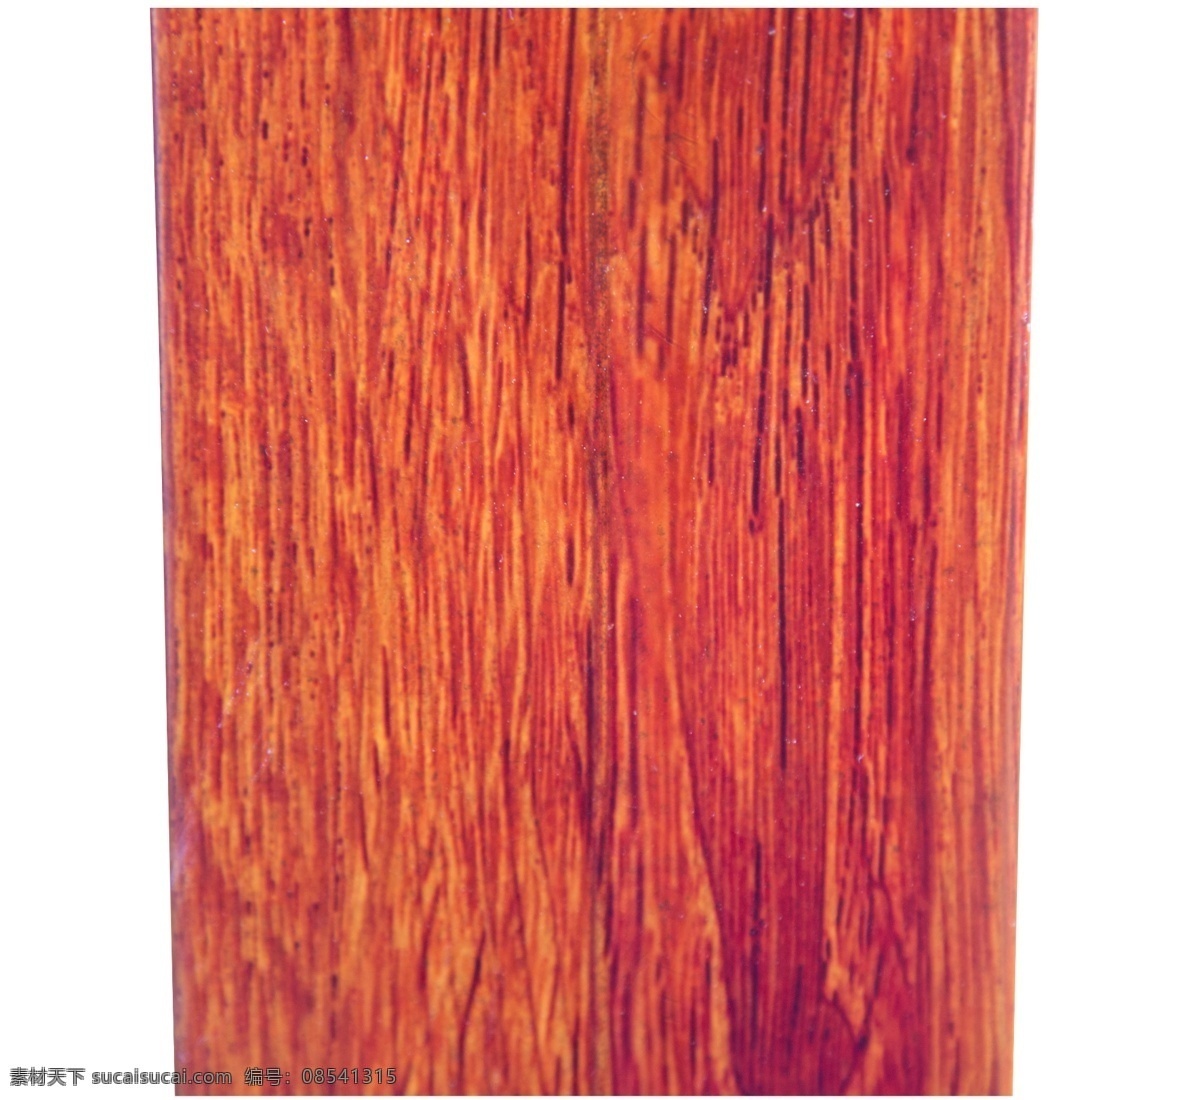 实木 木材 木板 纹理 纹路 木头 木纹 材质 黄色木纹 平坦的 材料 横截 木粗糙的纹理 自然